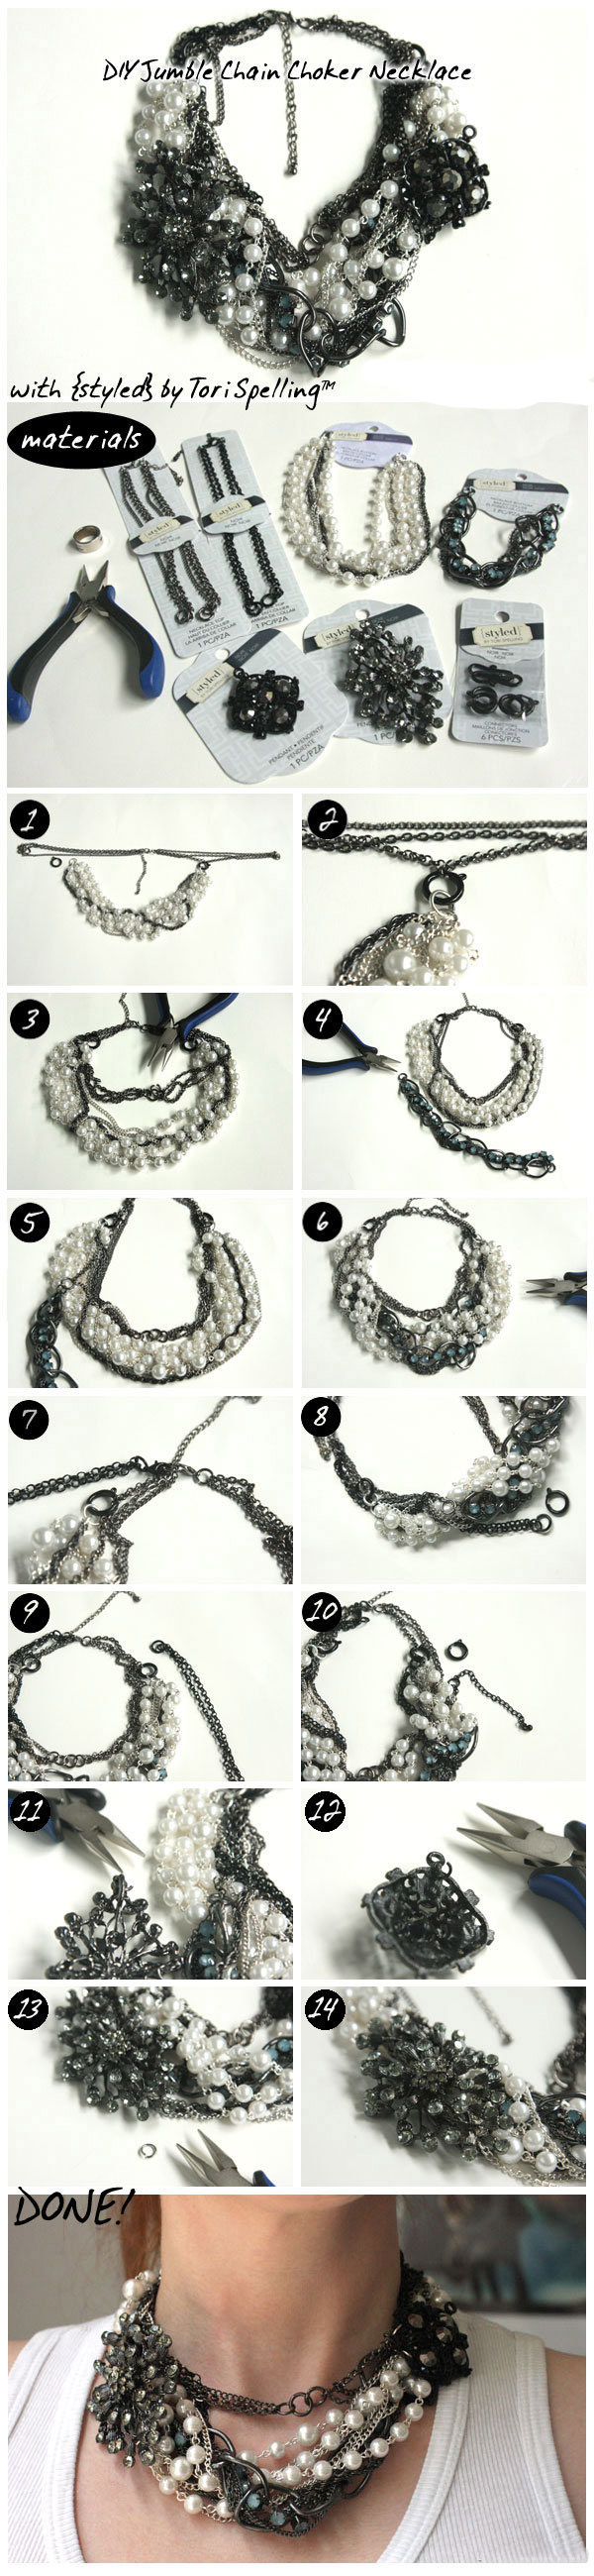 DIY Fashion 15 Amazing Necklace (5)